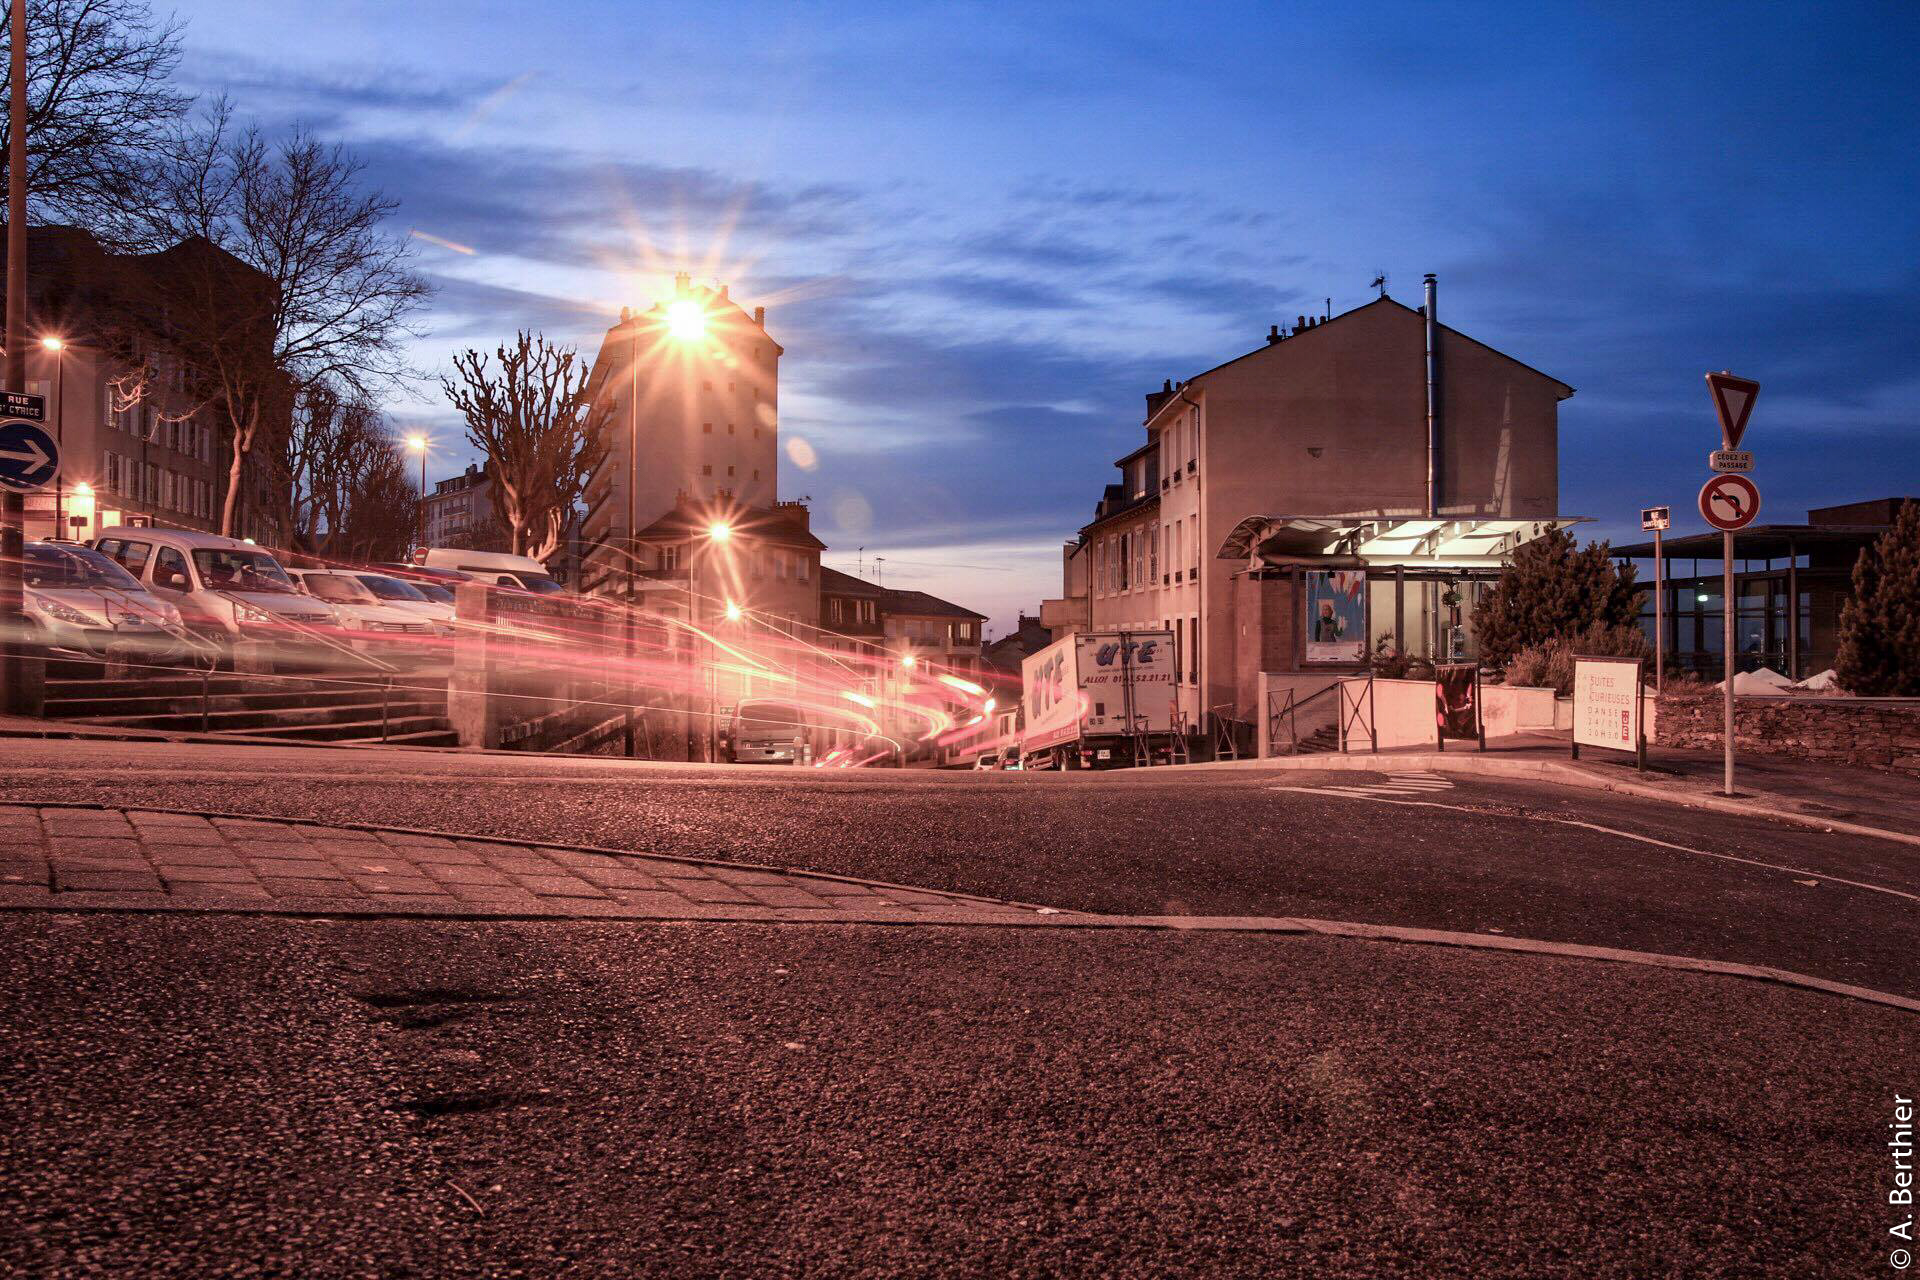 Jeux de lumières en haut de la rue Saint-Cyrice, Rodez, Aveyron